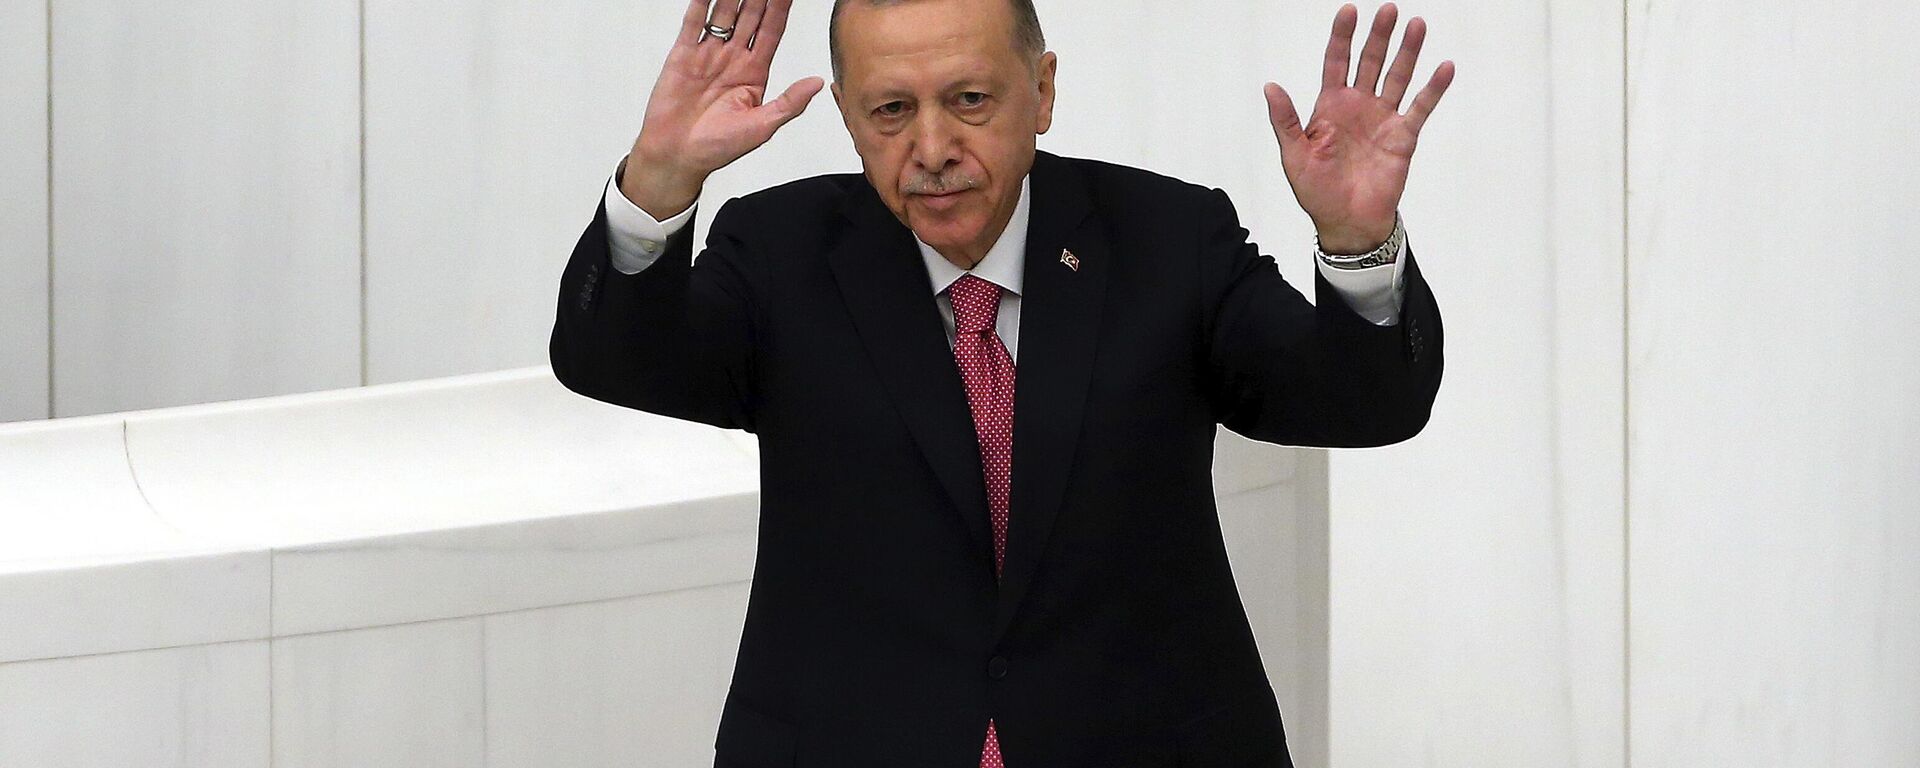 Реџеп Тајип Ердоган на церемонији полагања заклетве и инаугурације председника - Sputnik Србија, 1920, 03.06.2023